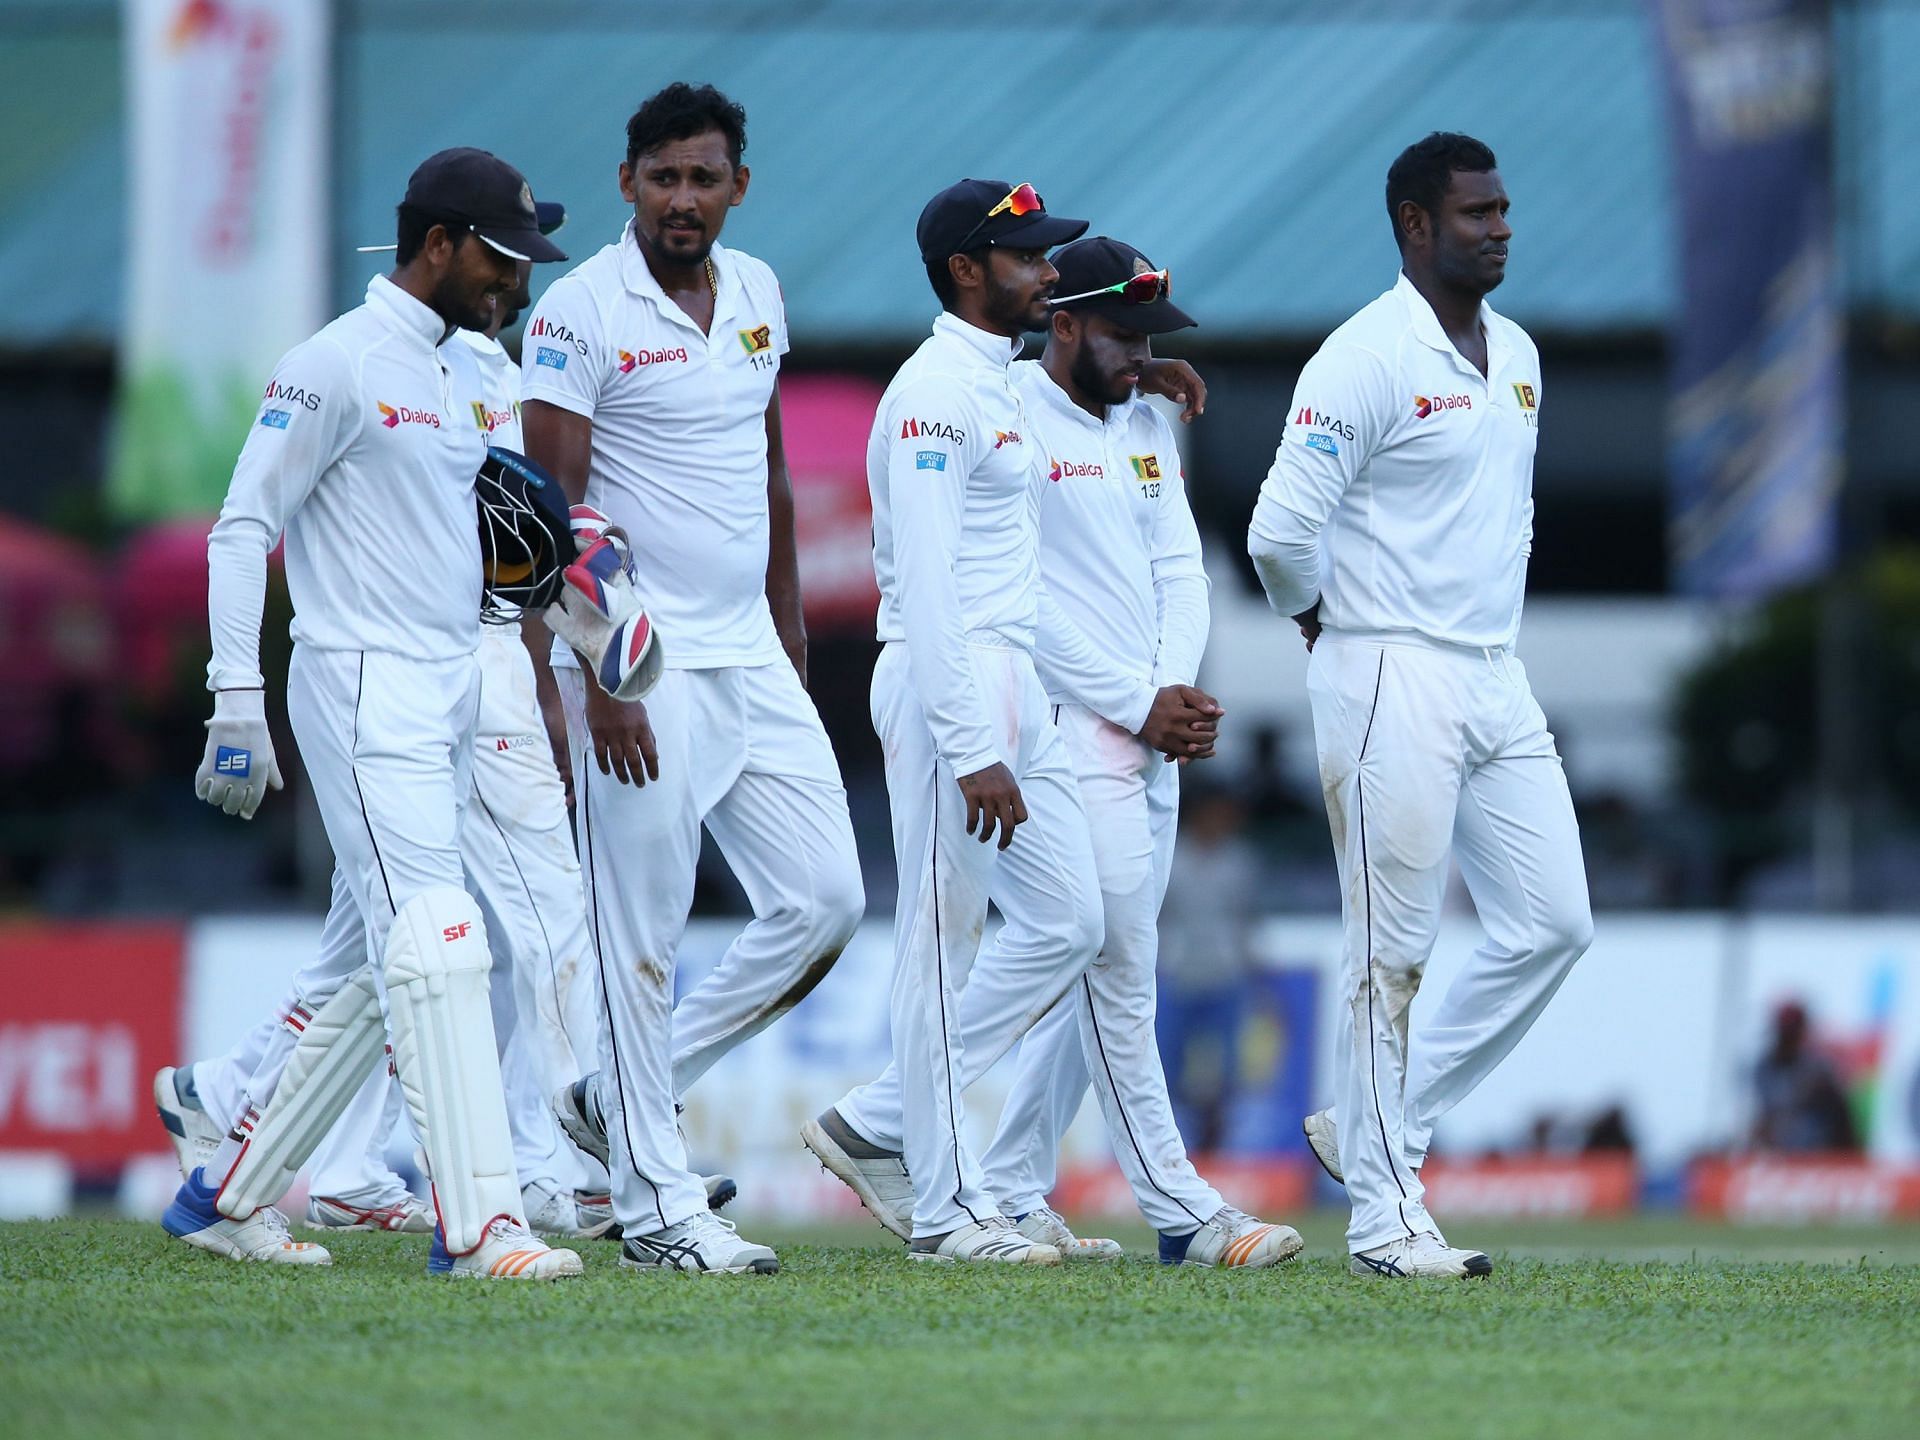 श्रीलंका की टीम वहां दो टेस्ट की सीरीज में खेलेगी 